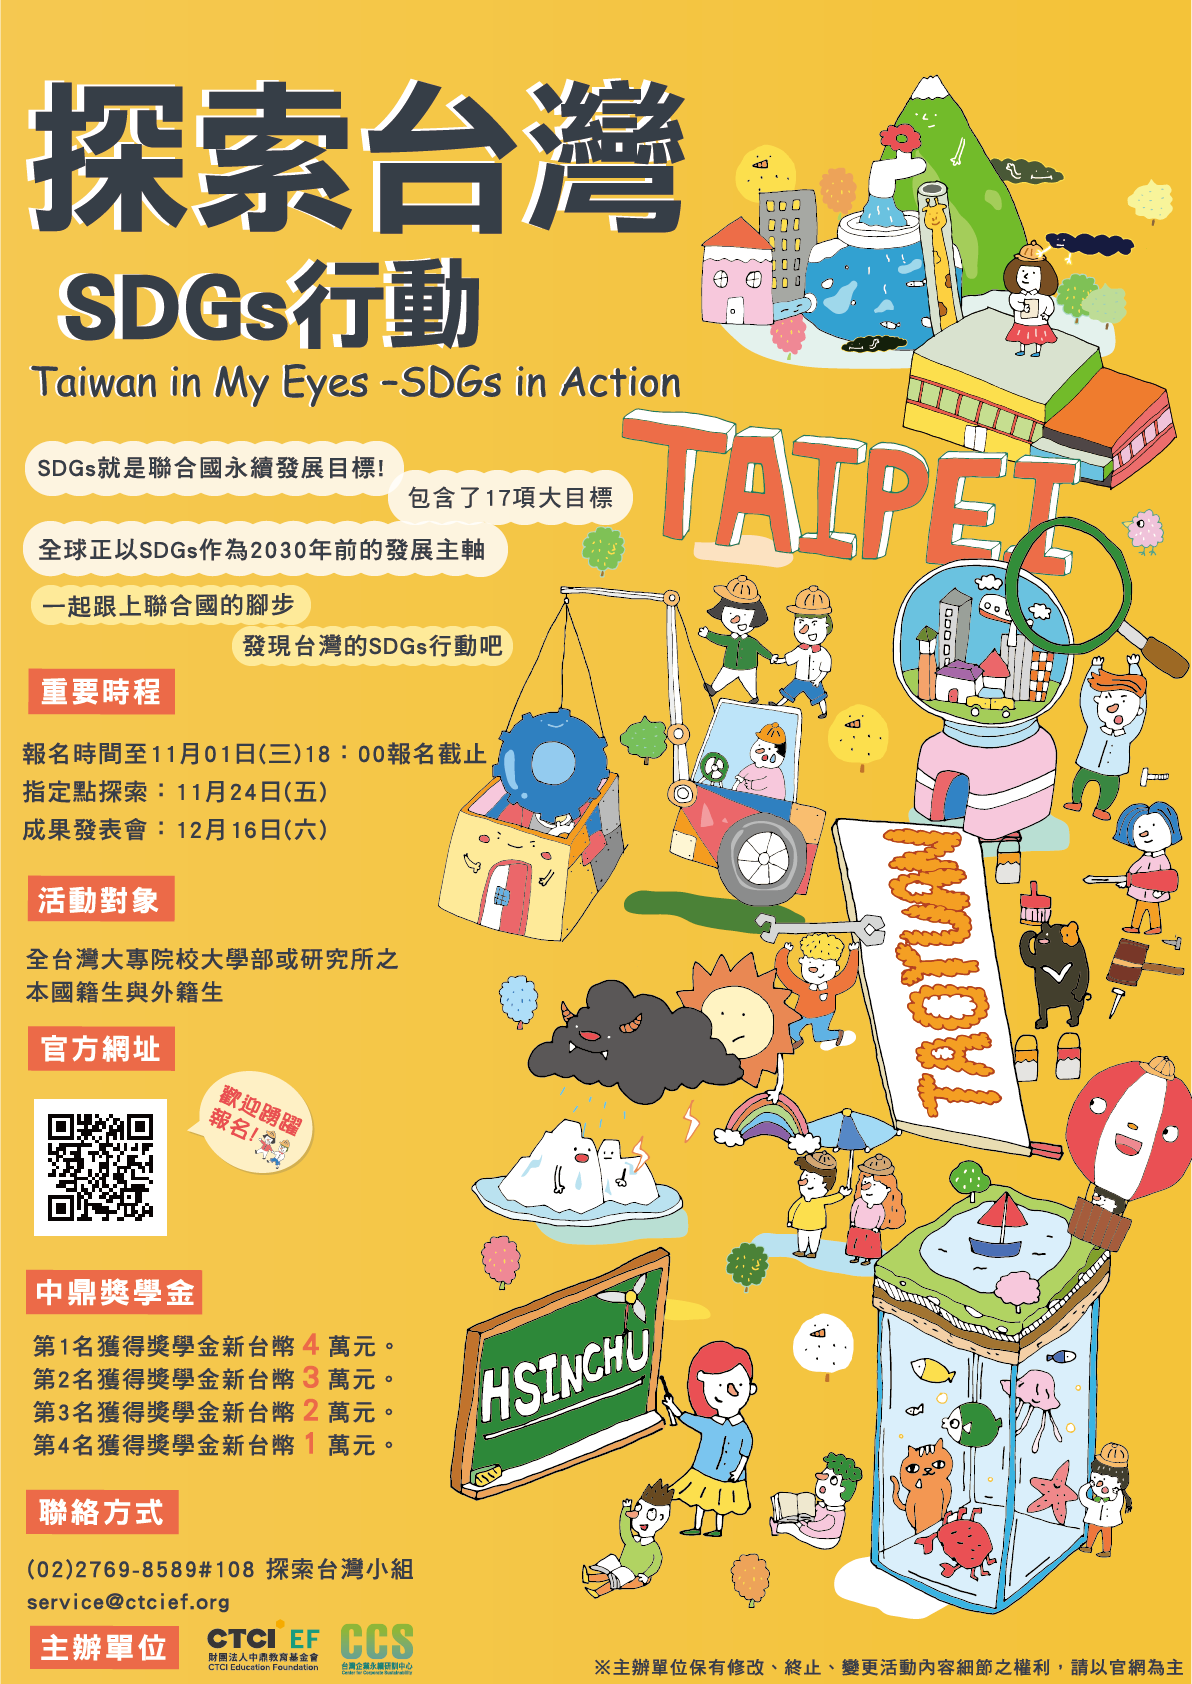 2017年探索台灣SDGs.jpg